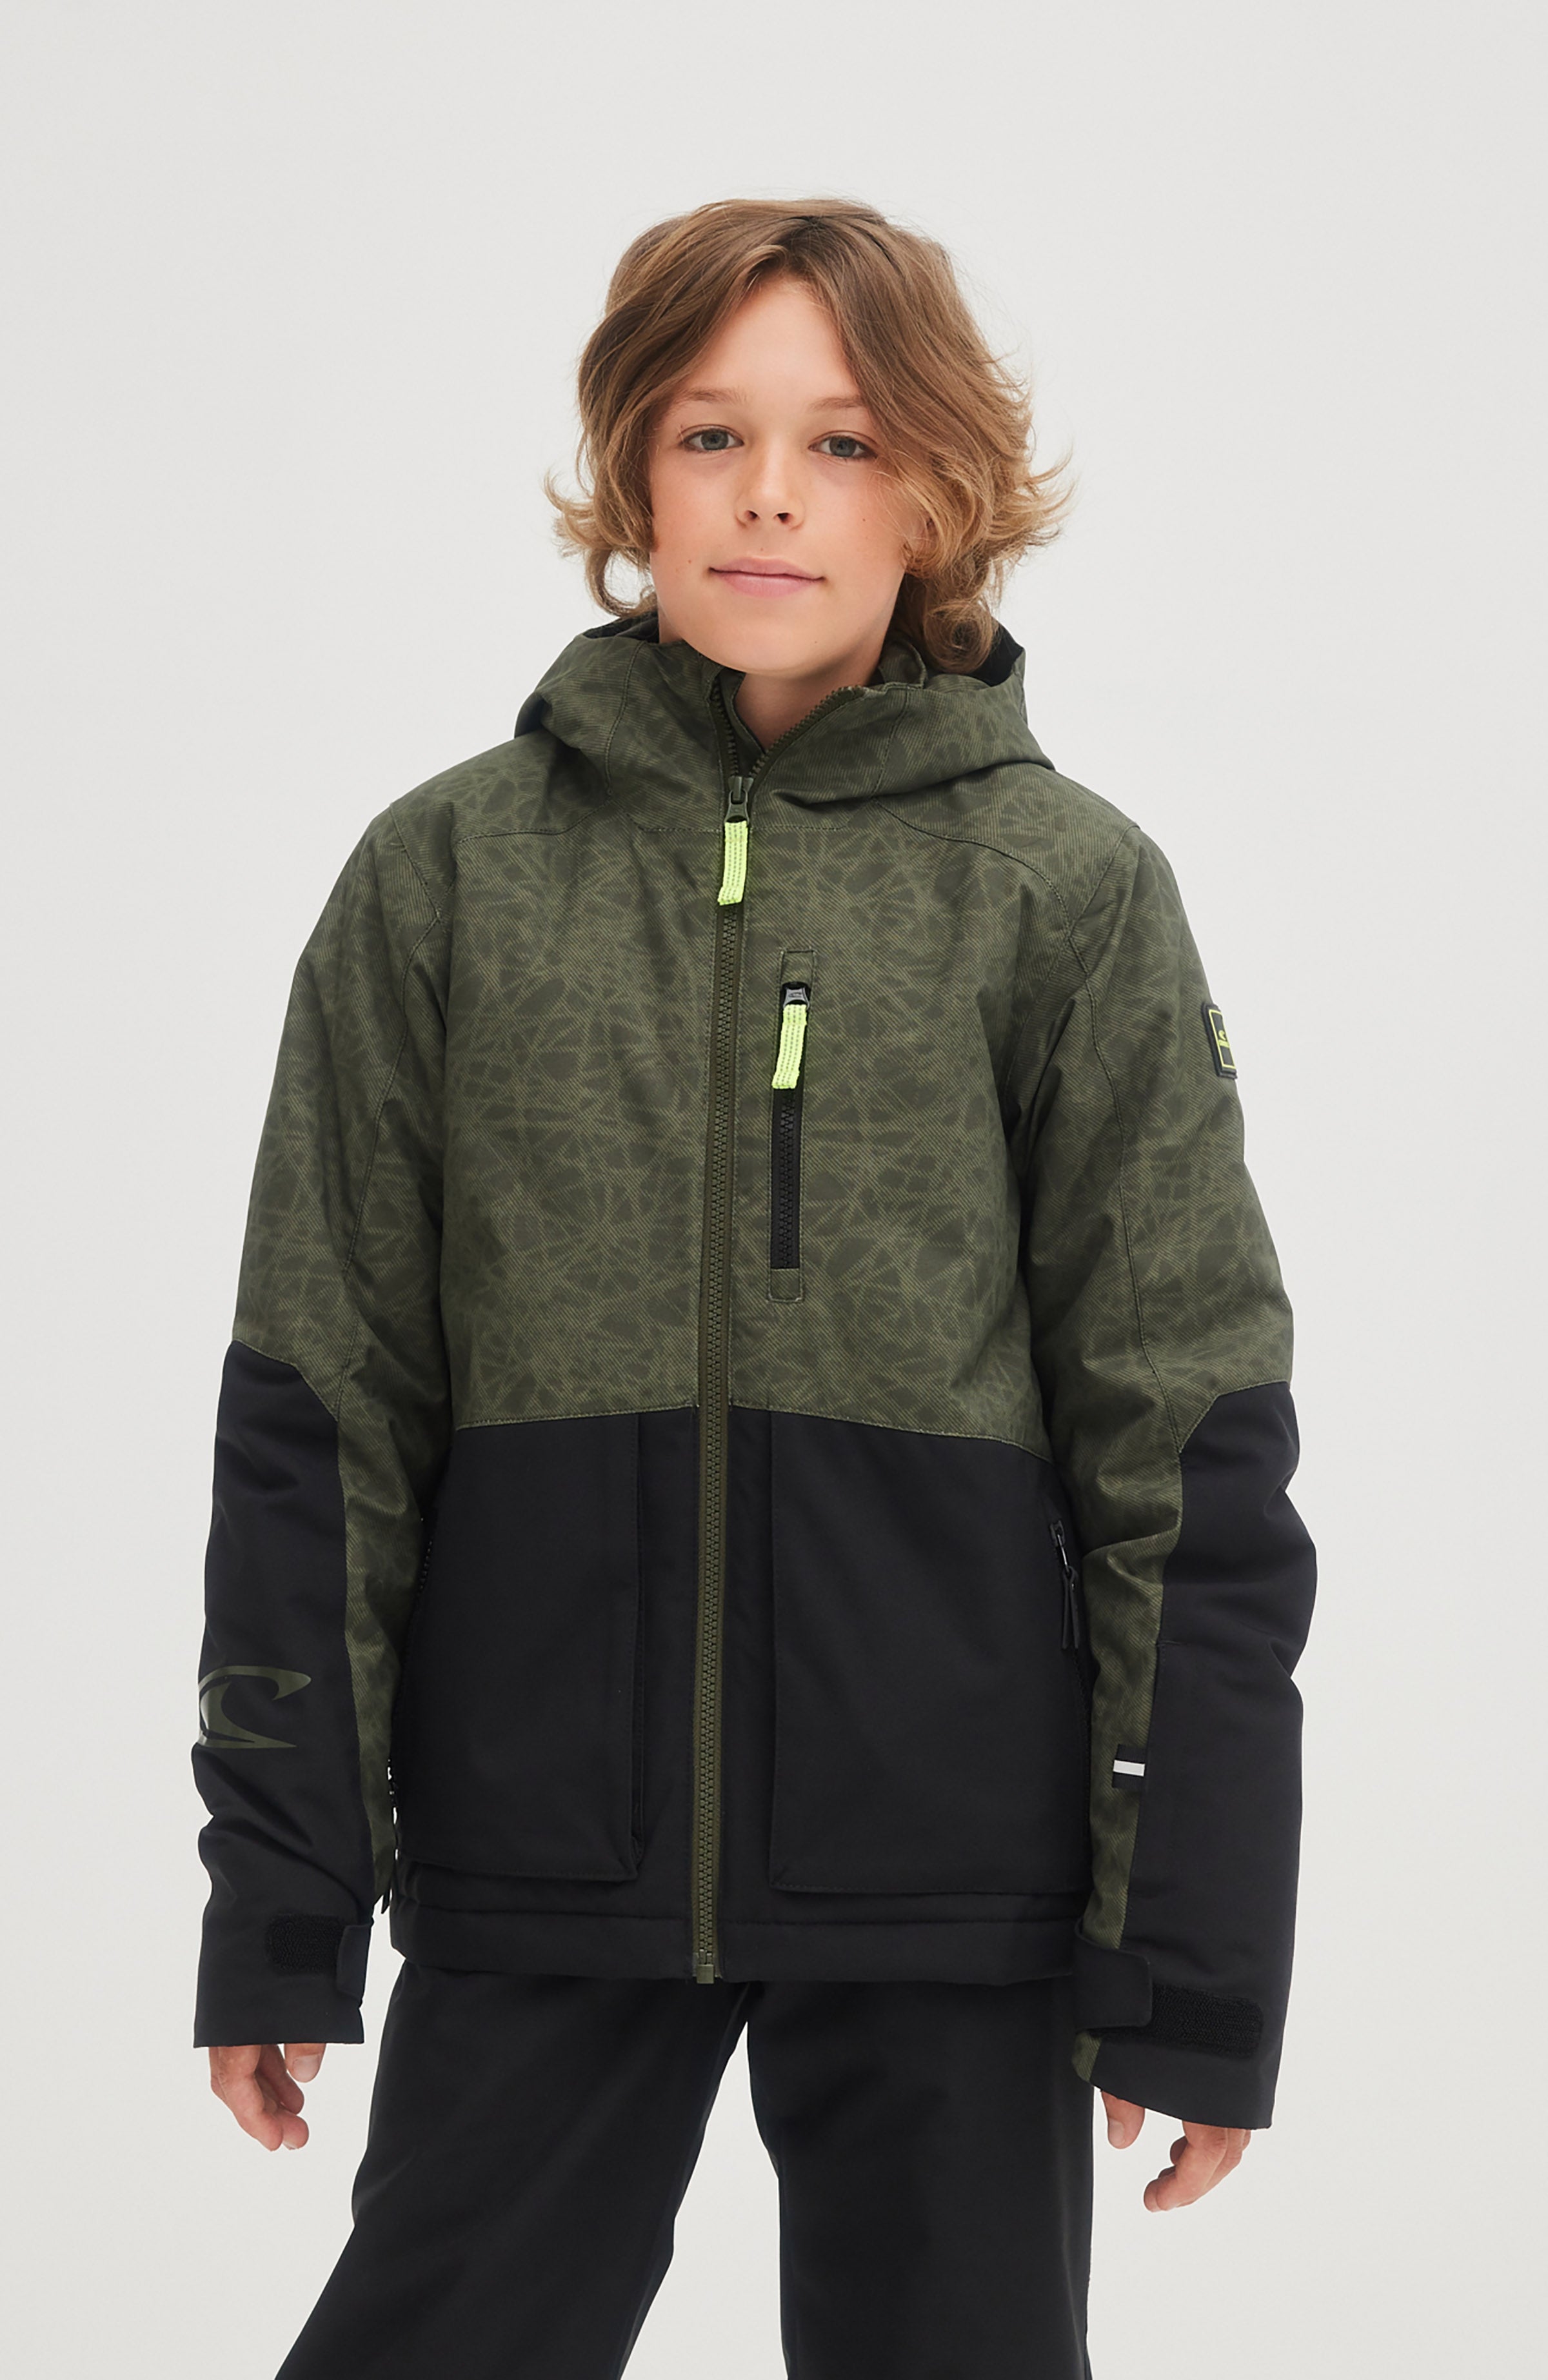 inhoudsopgave Begin Gevaar Ski Jackets for Boys Outlet | All Sale! – O'Neill